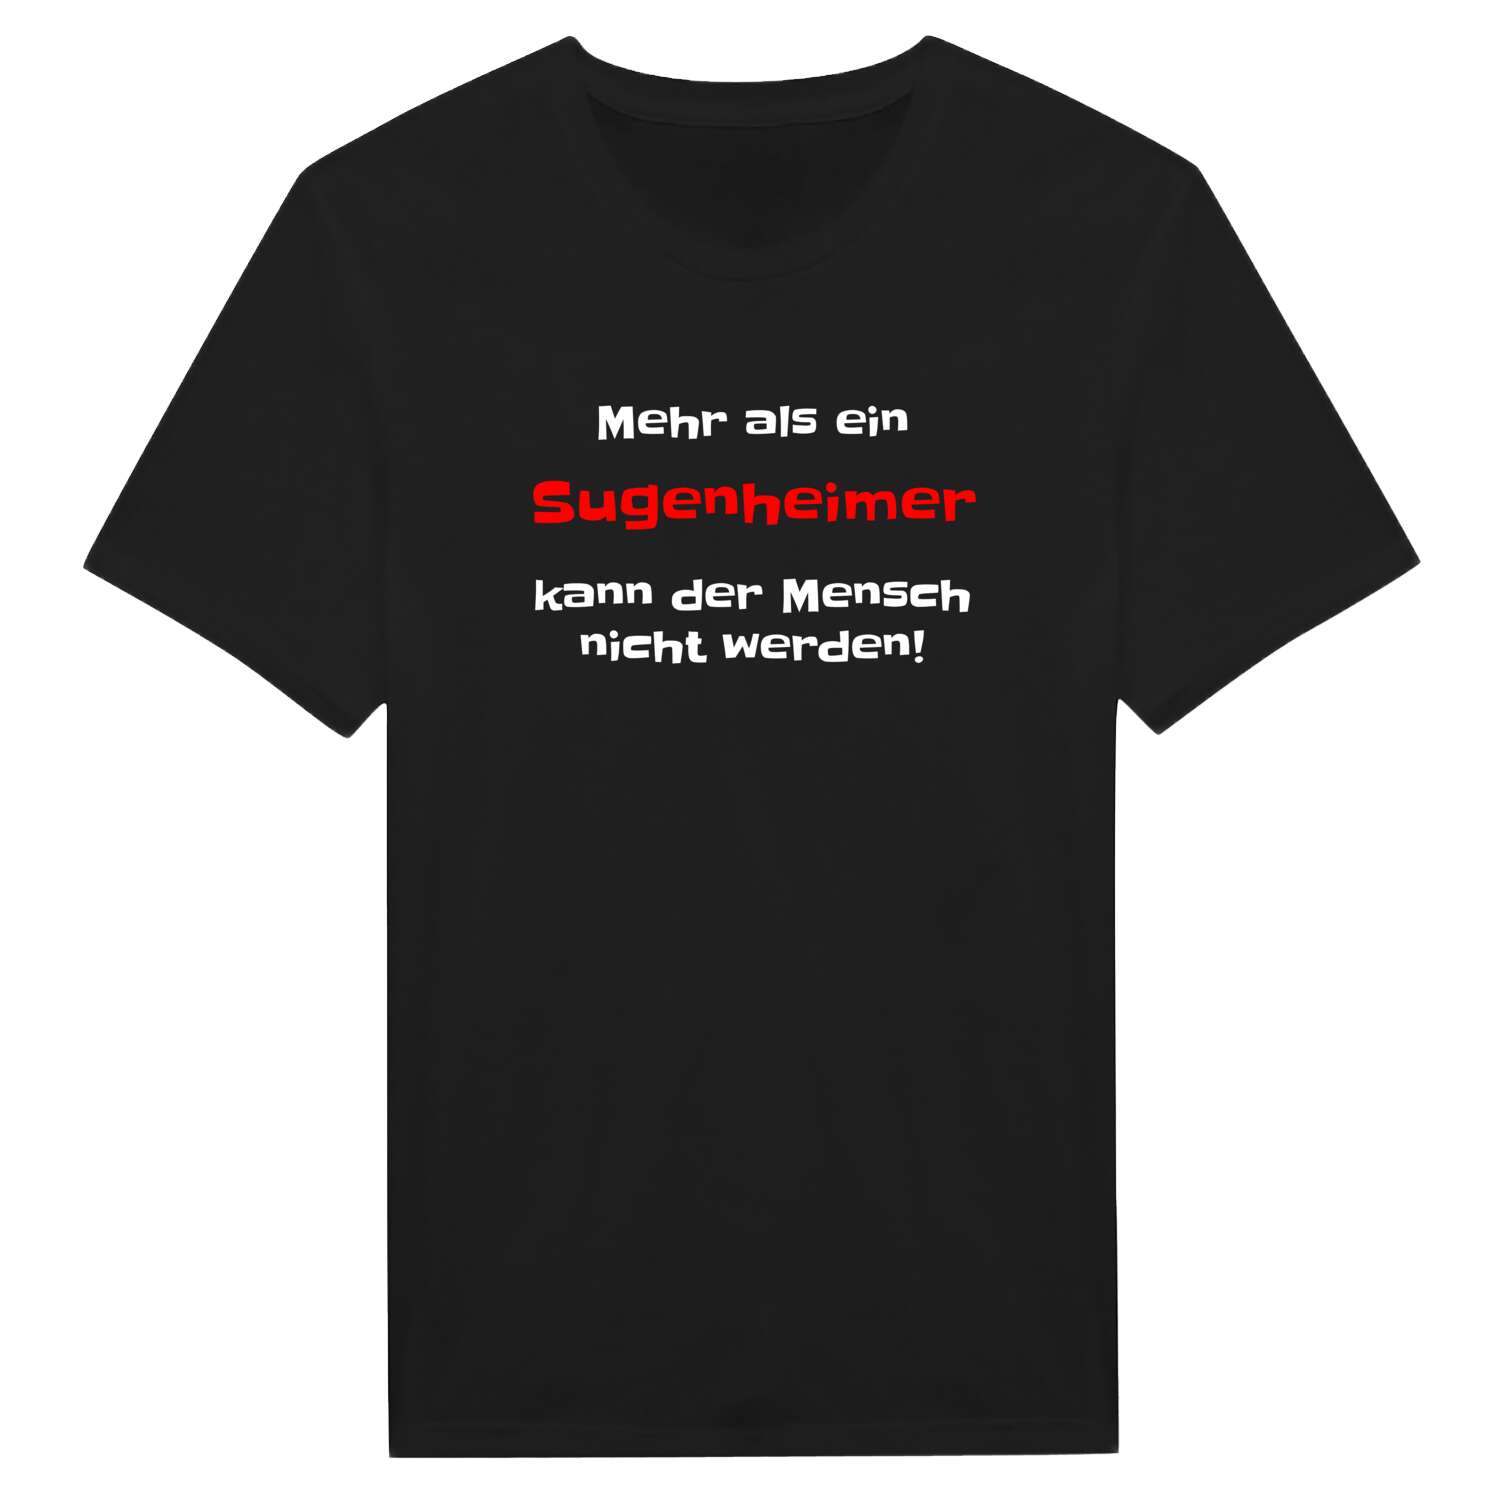 Sugenheim T-Shirt »Mehr als ein«